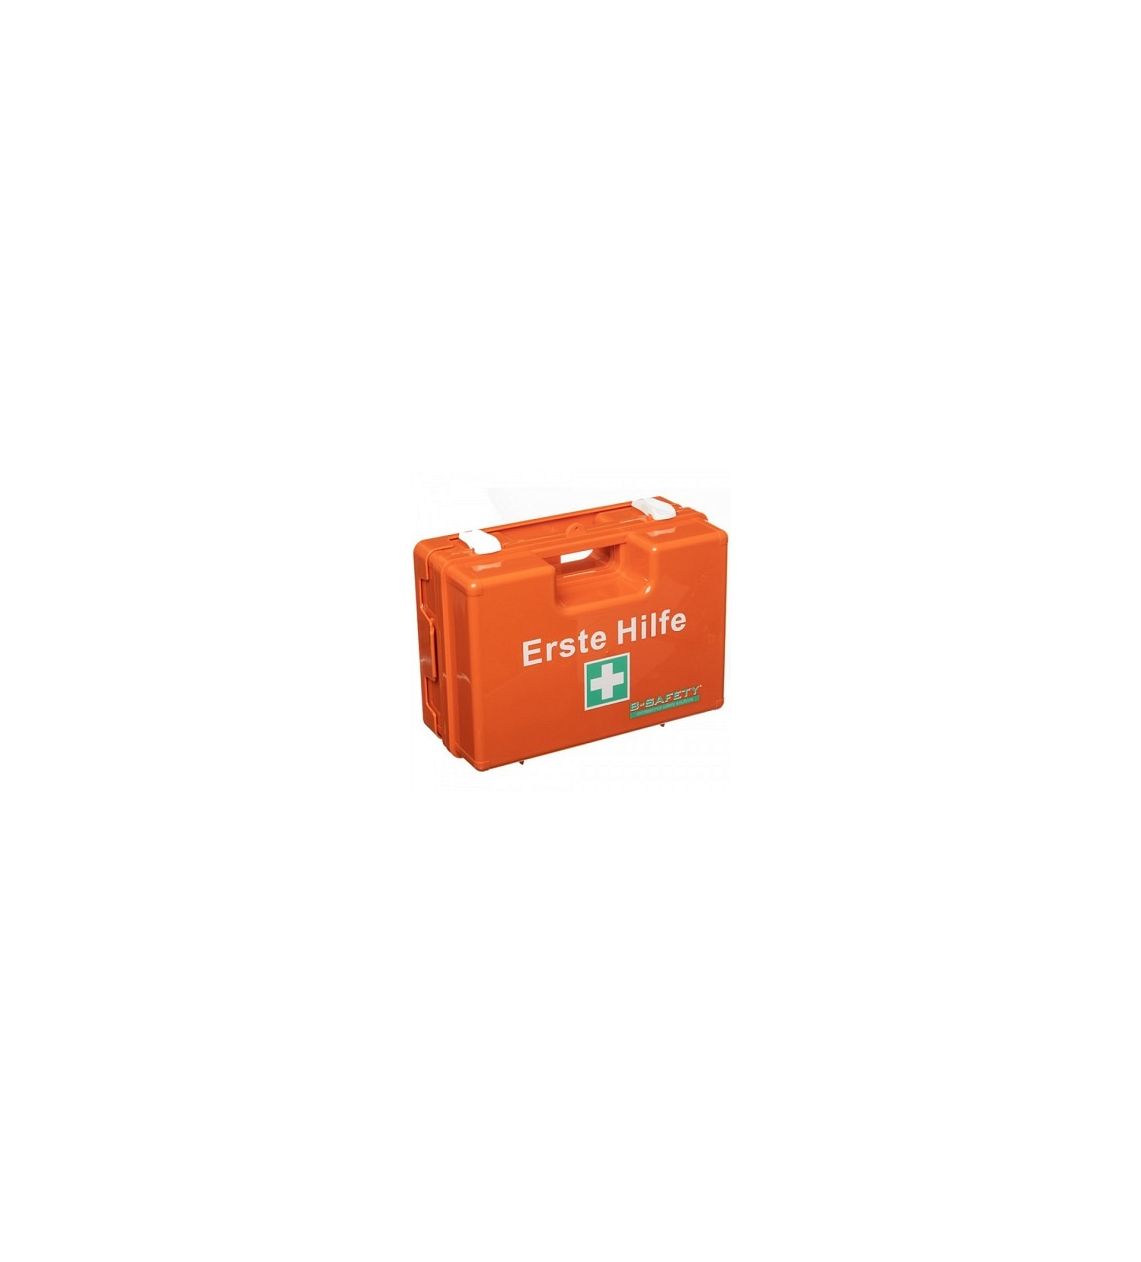 B-SAFETY Erste-Hilfe-Koffer CLASSIC DIN 13157